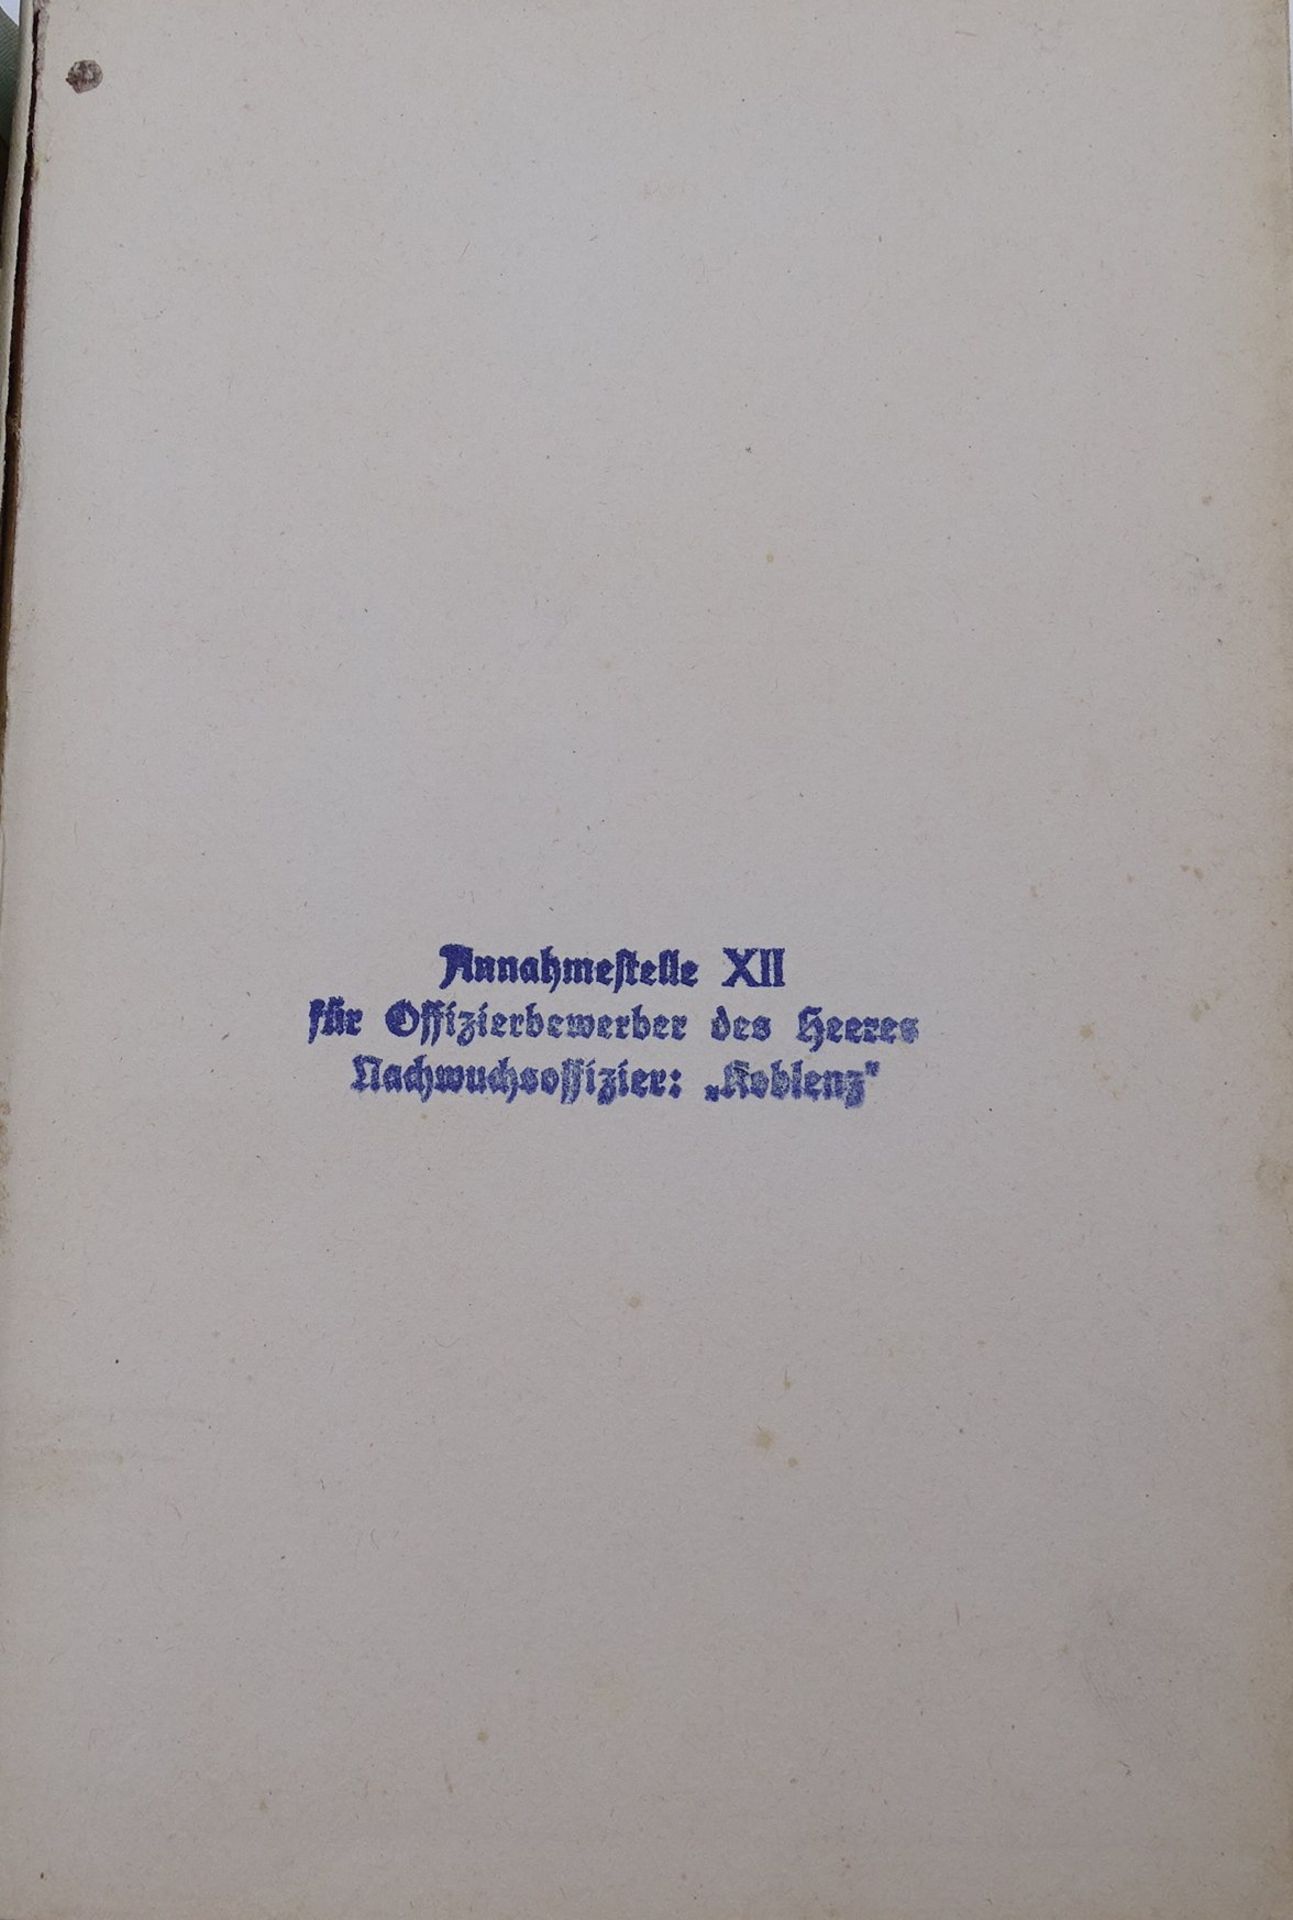 Unvergleichliche deutsche Infantrie, Freiherr Grote, 1942, Alters-u. Gebrauchsspuren - Image 2 of 4